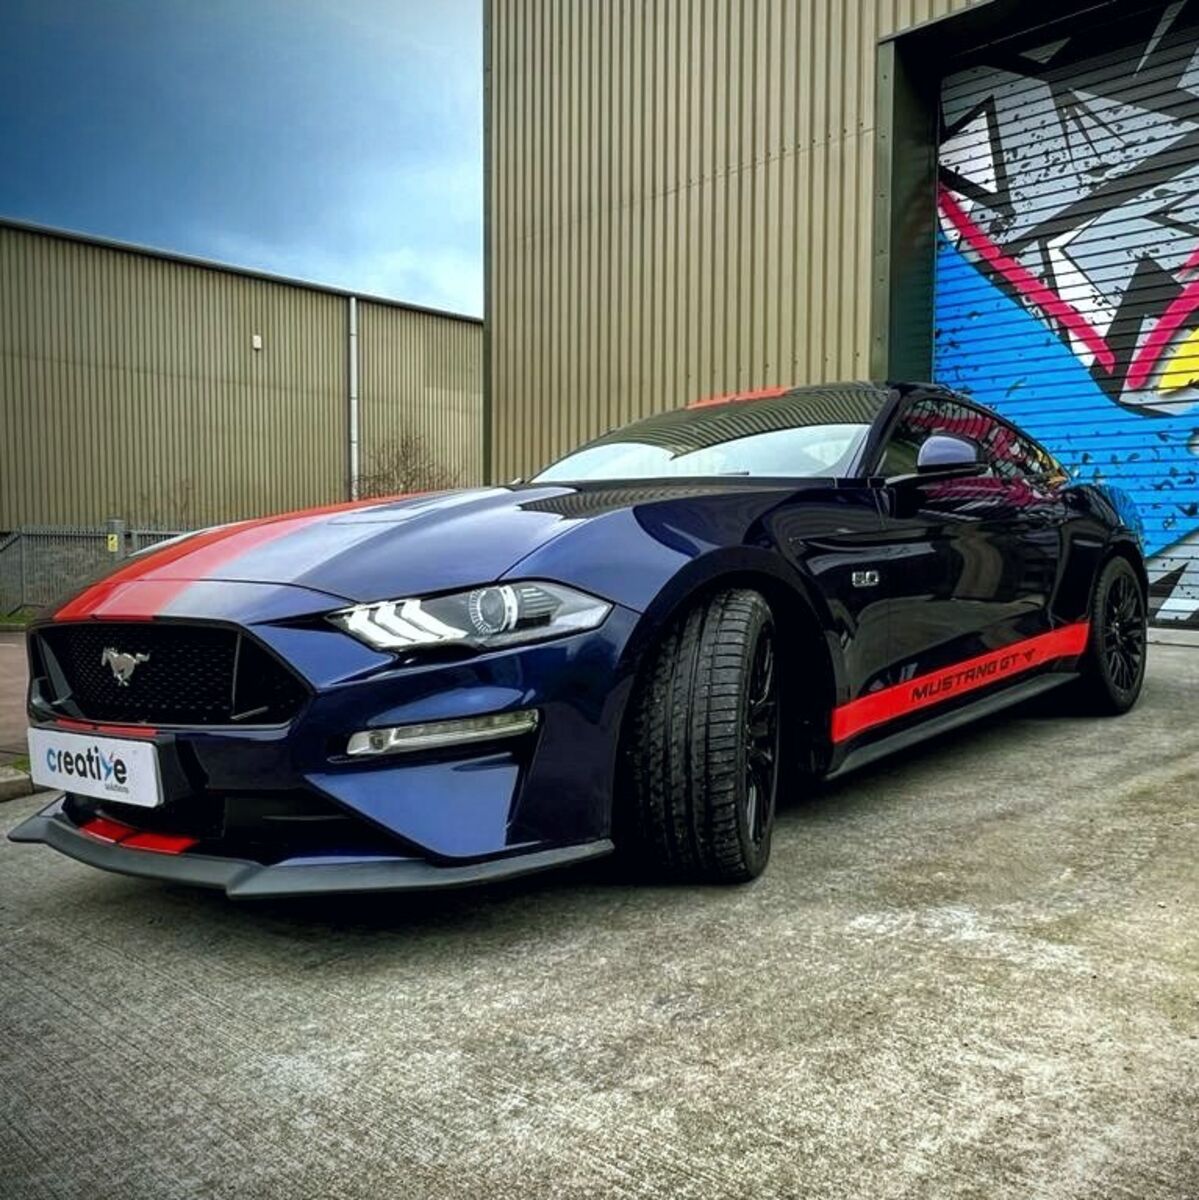 Custom Gloss Red Stripes on Dark Blue Mustang GT - Passenger Side View.jpg